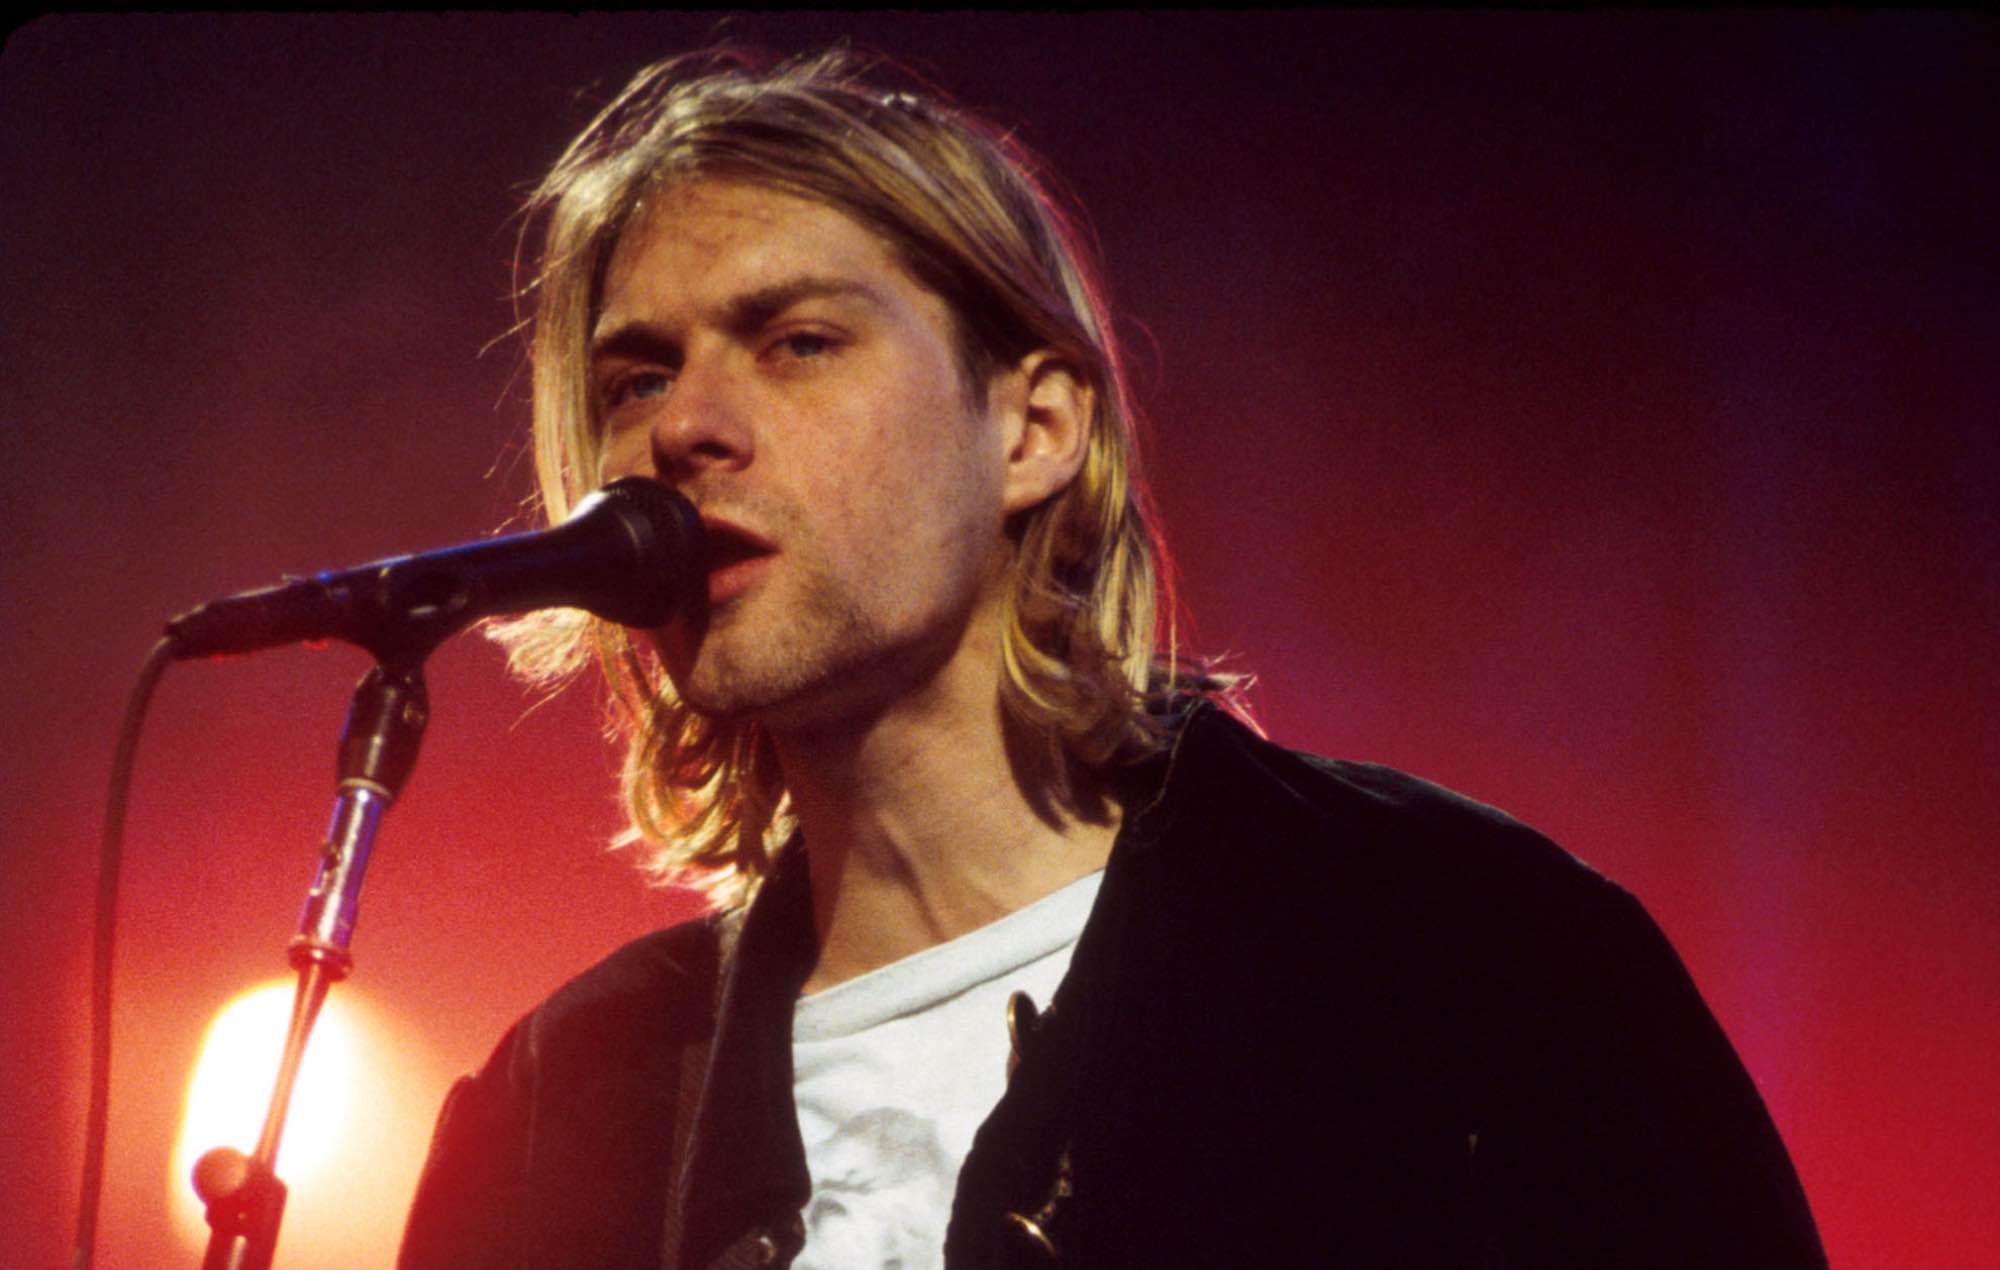 New Kurt Cobain documentary to air on BBC next month